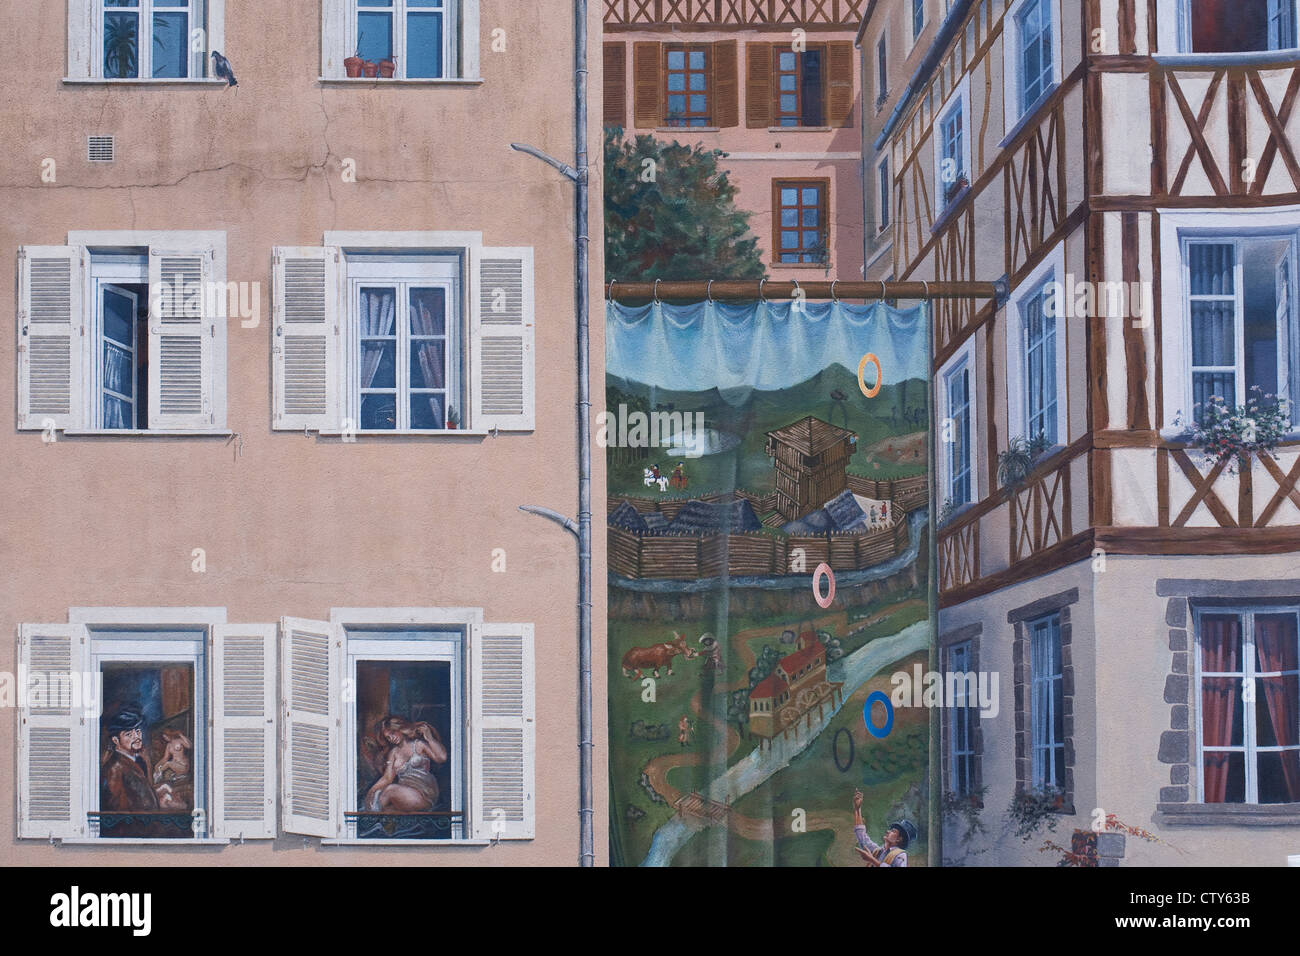 Trompe-l'oeil on the Place de la Motte in Limoges, Haute-Vienne, France. Stock Photo